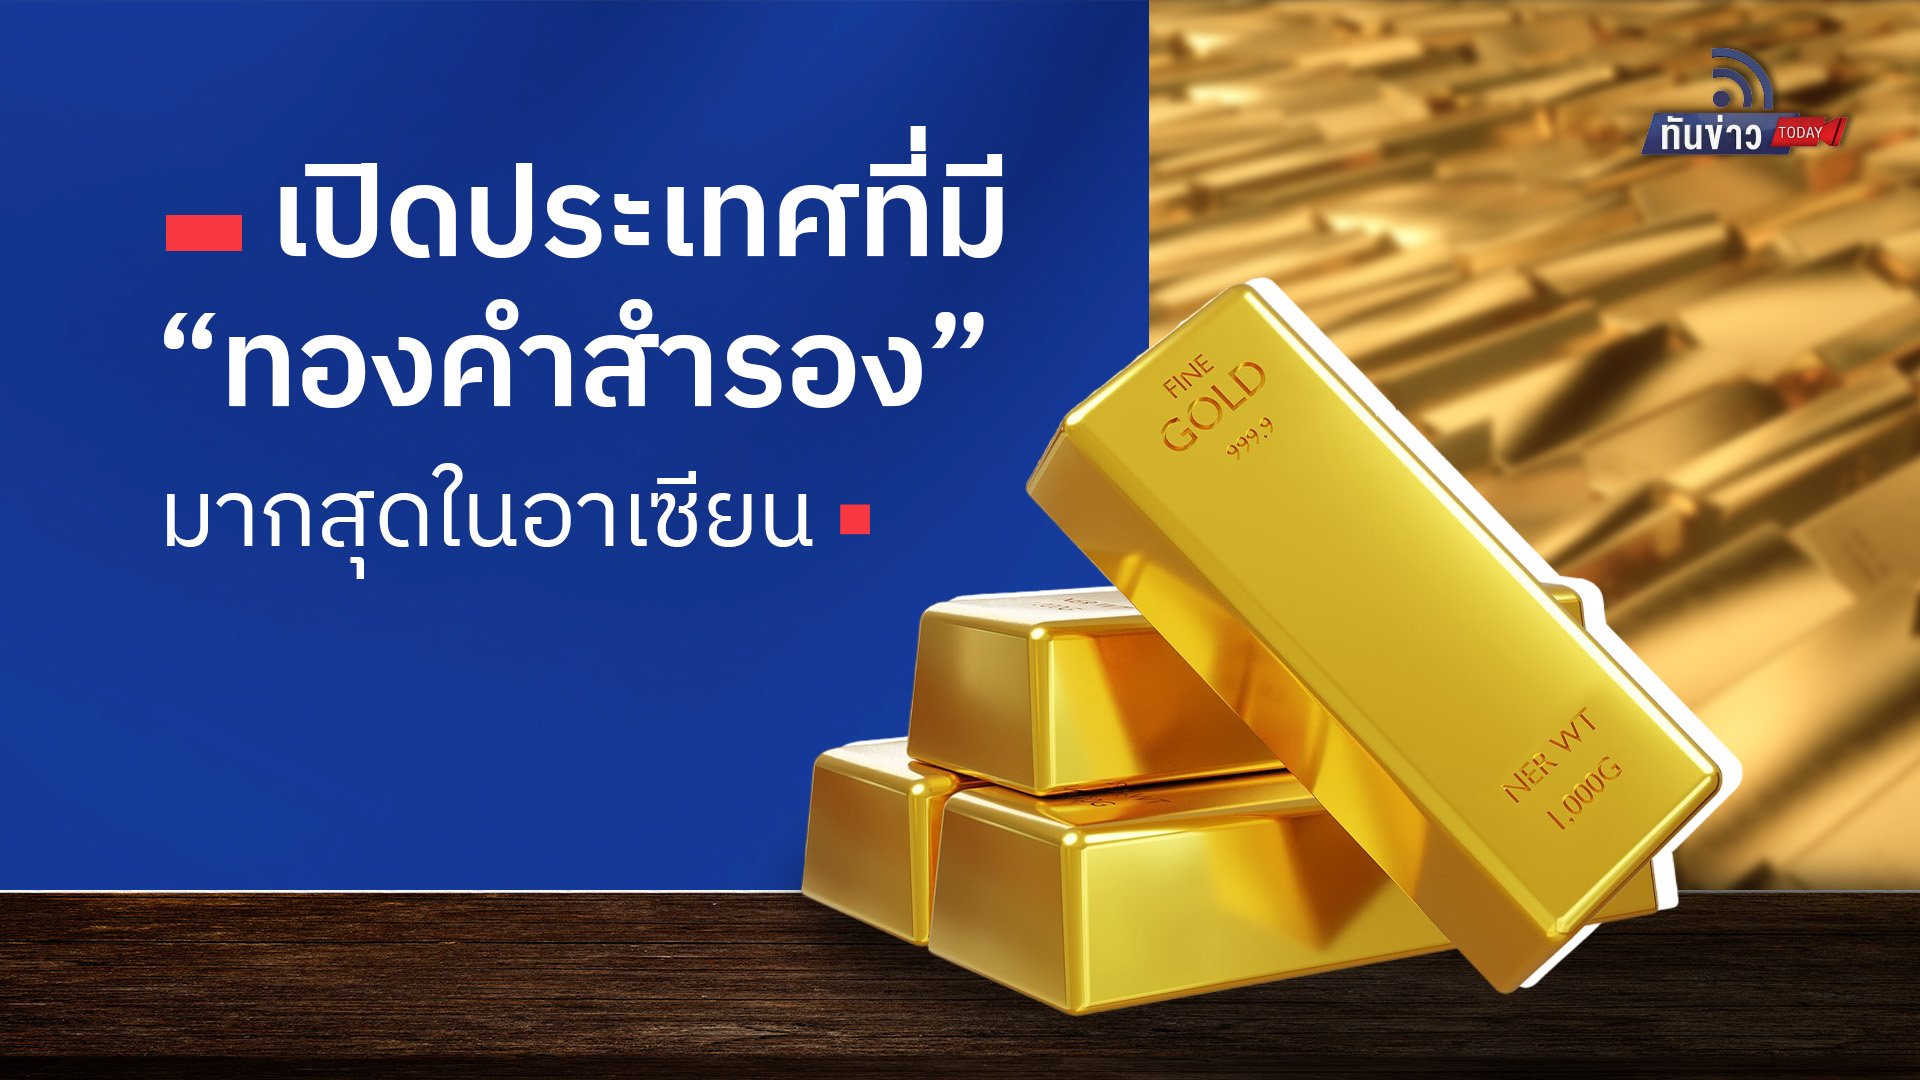 เปิดประเทศที่มี “ทองคำสำรอง“ มากสุดในอาเซียน